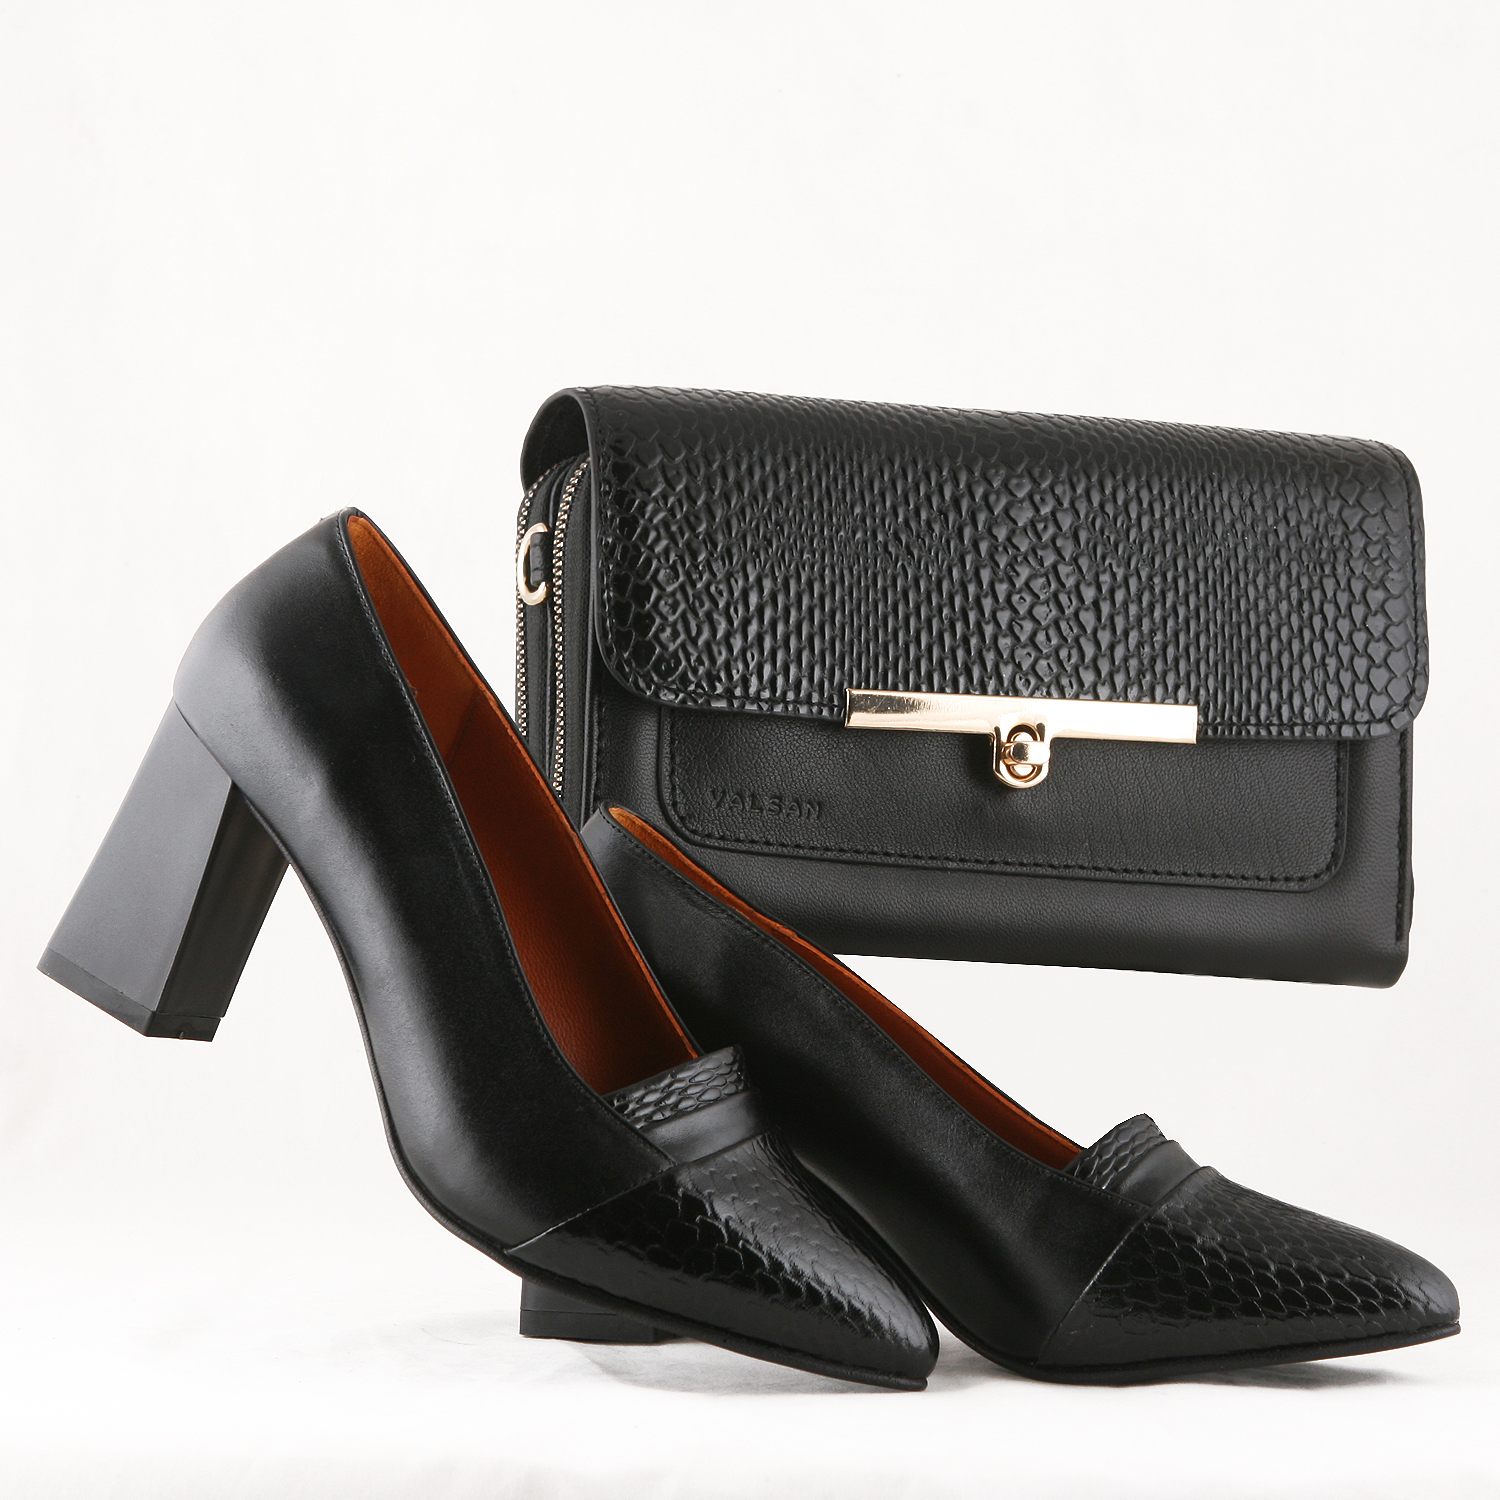 ست کیف و کفش زنانه مدل لیندا کد 912-TARA-MRV